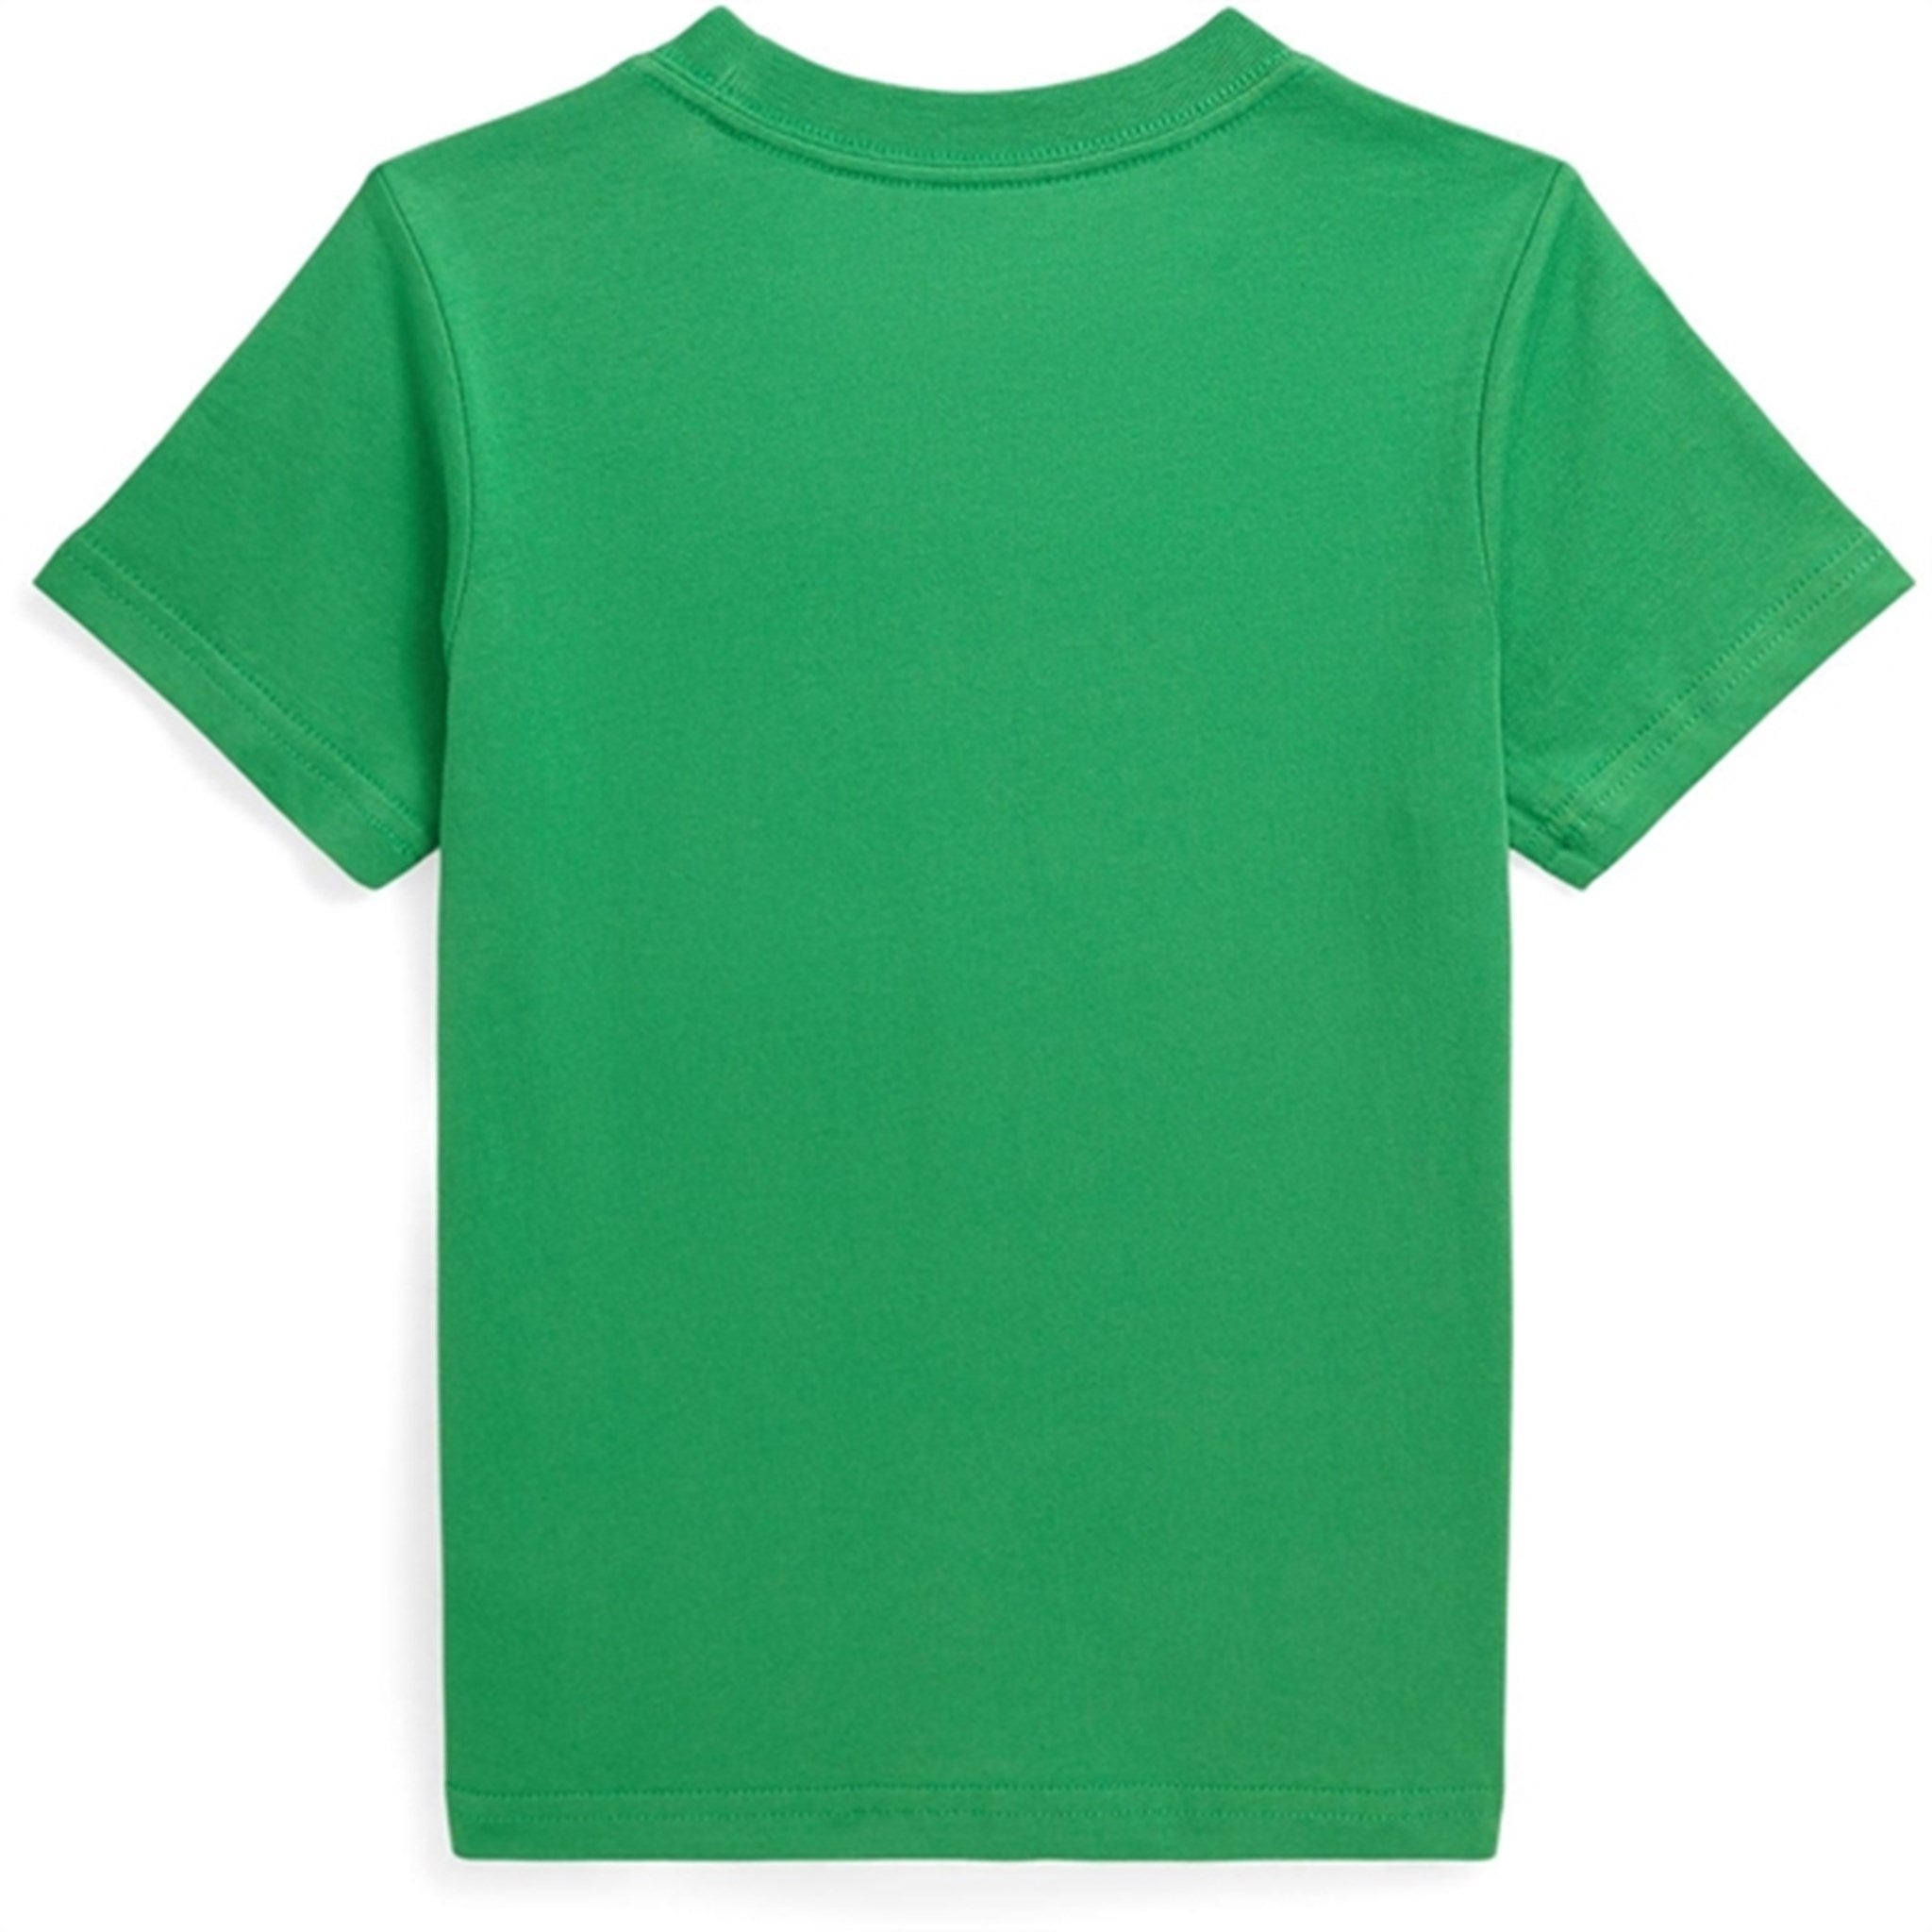 Polo Ralph Lauren Boys T-Shirt Preppy Green 2